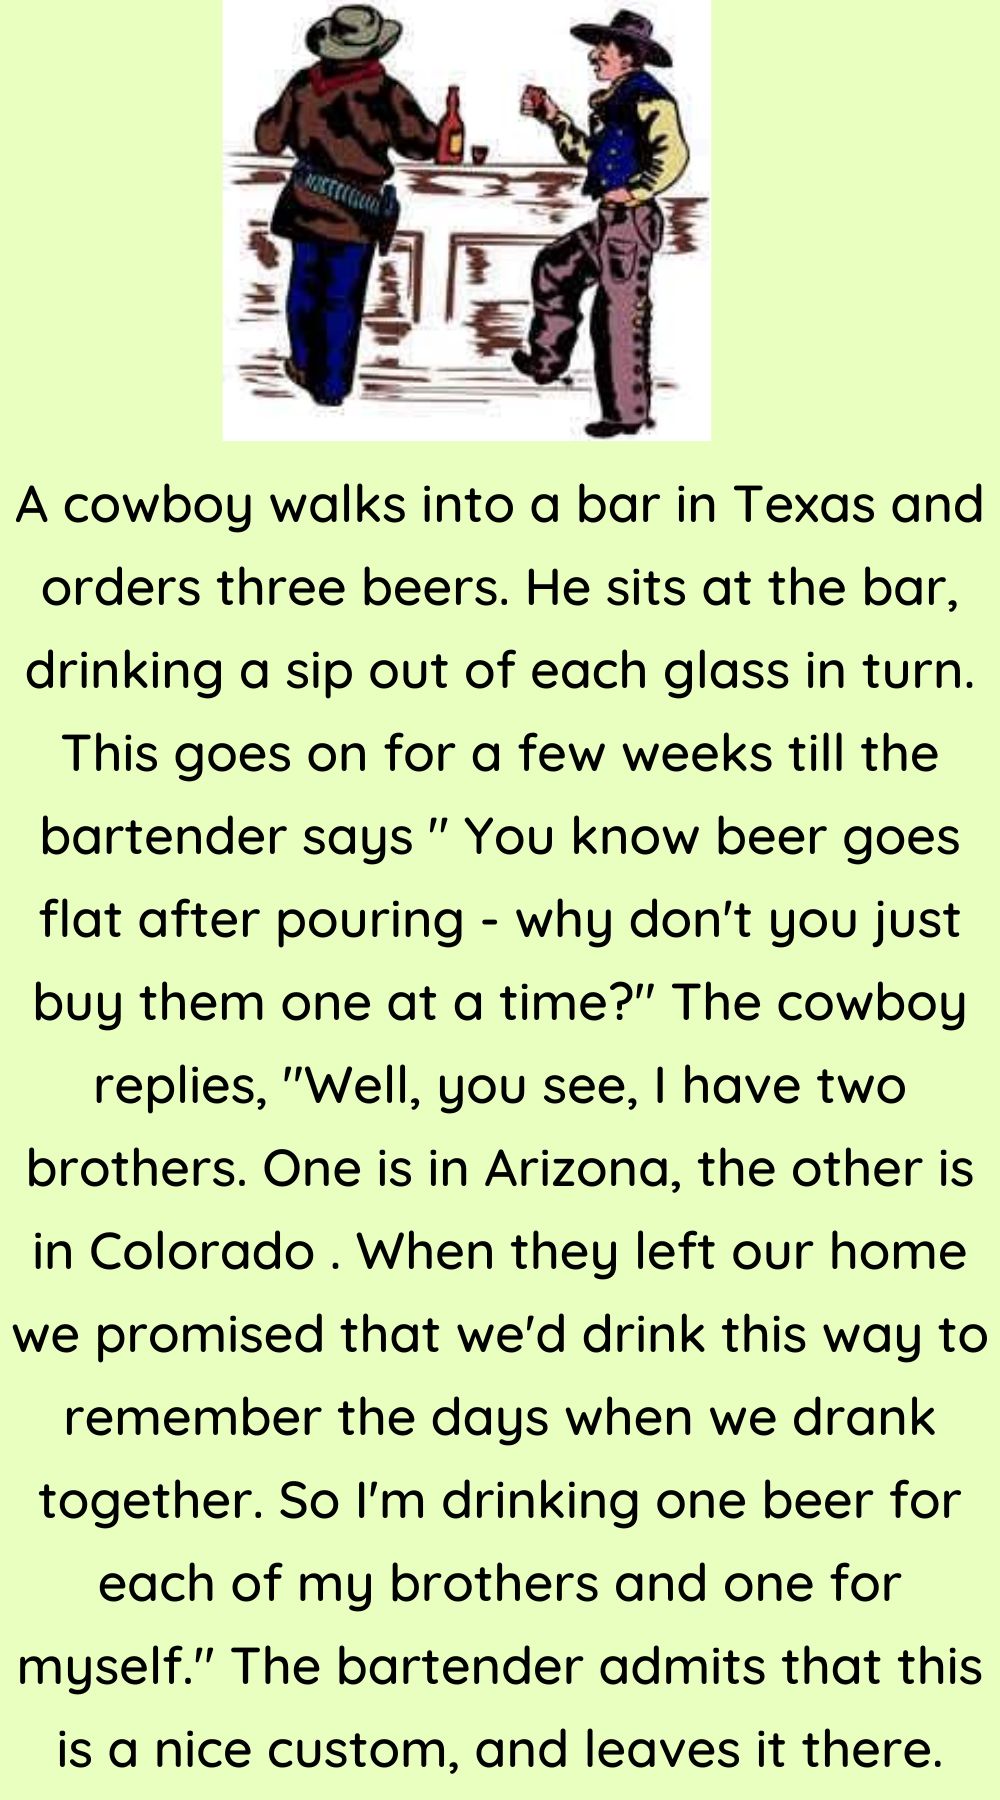 A cowboy walks into a bar 